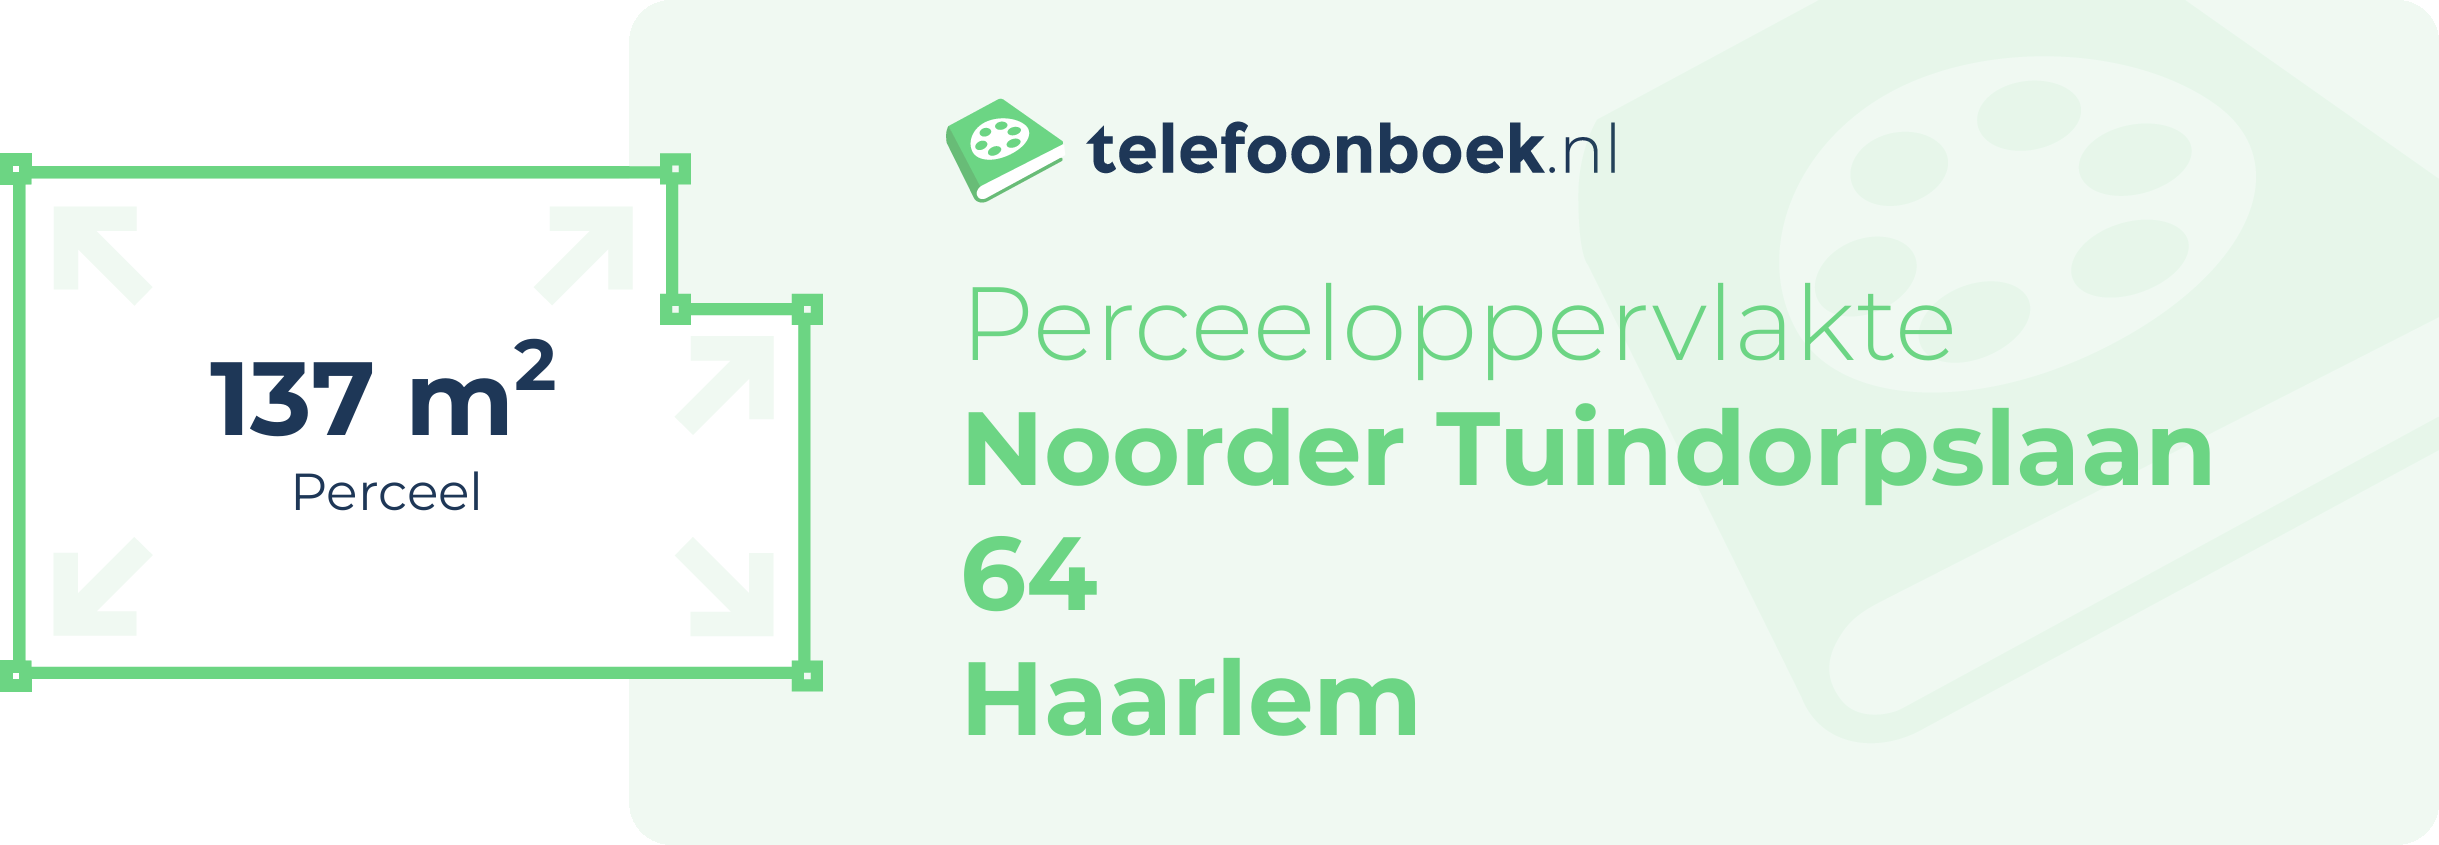 Perceeloppervlakte Noorder Tuindorpslaan 64 Haarlem